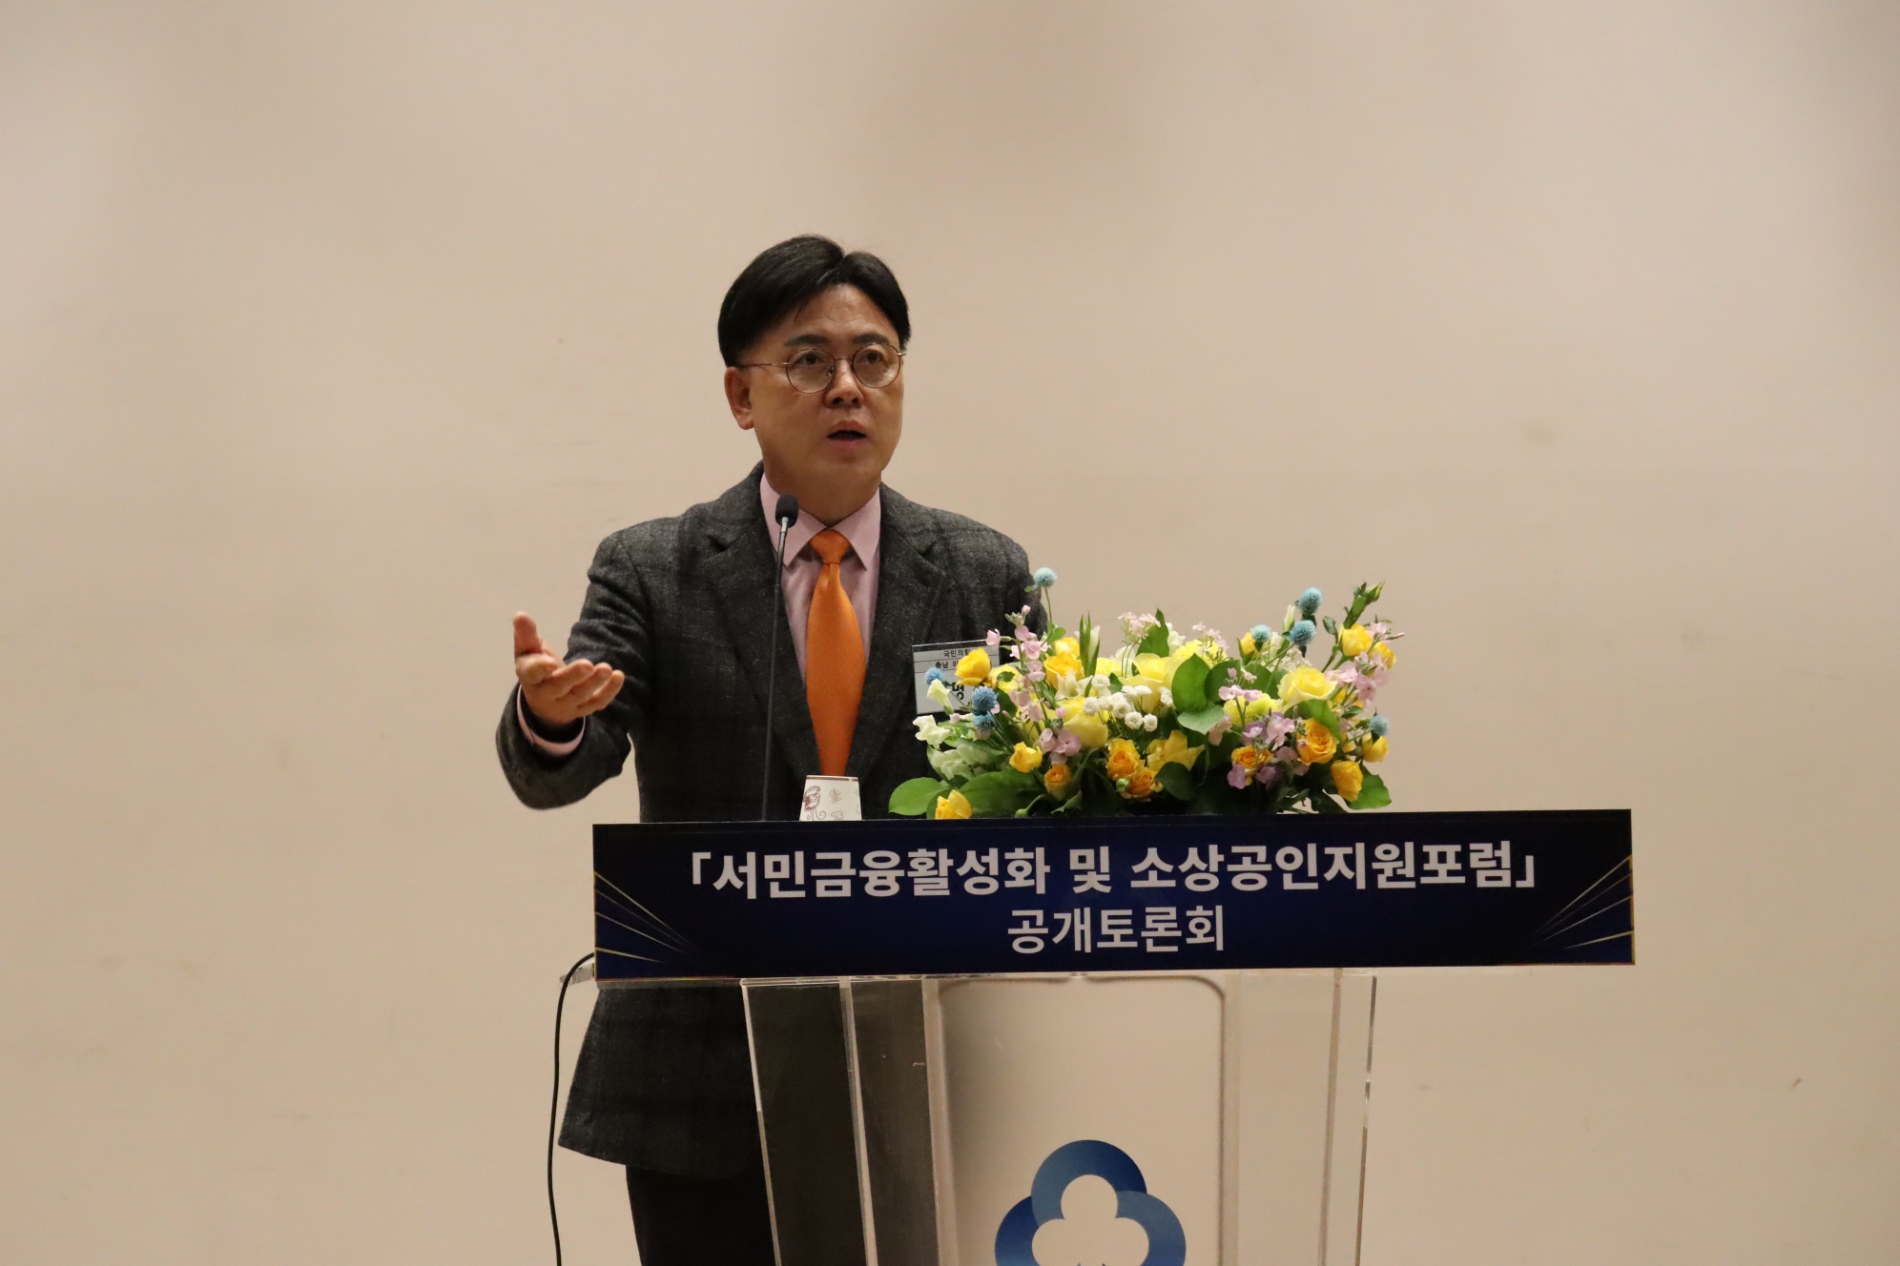 이명수 의원, ‘서민금융활성화 및 소상공인지원포럼’ 공개토론회’ 개최